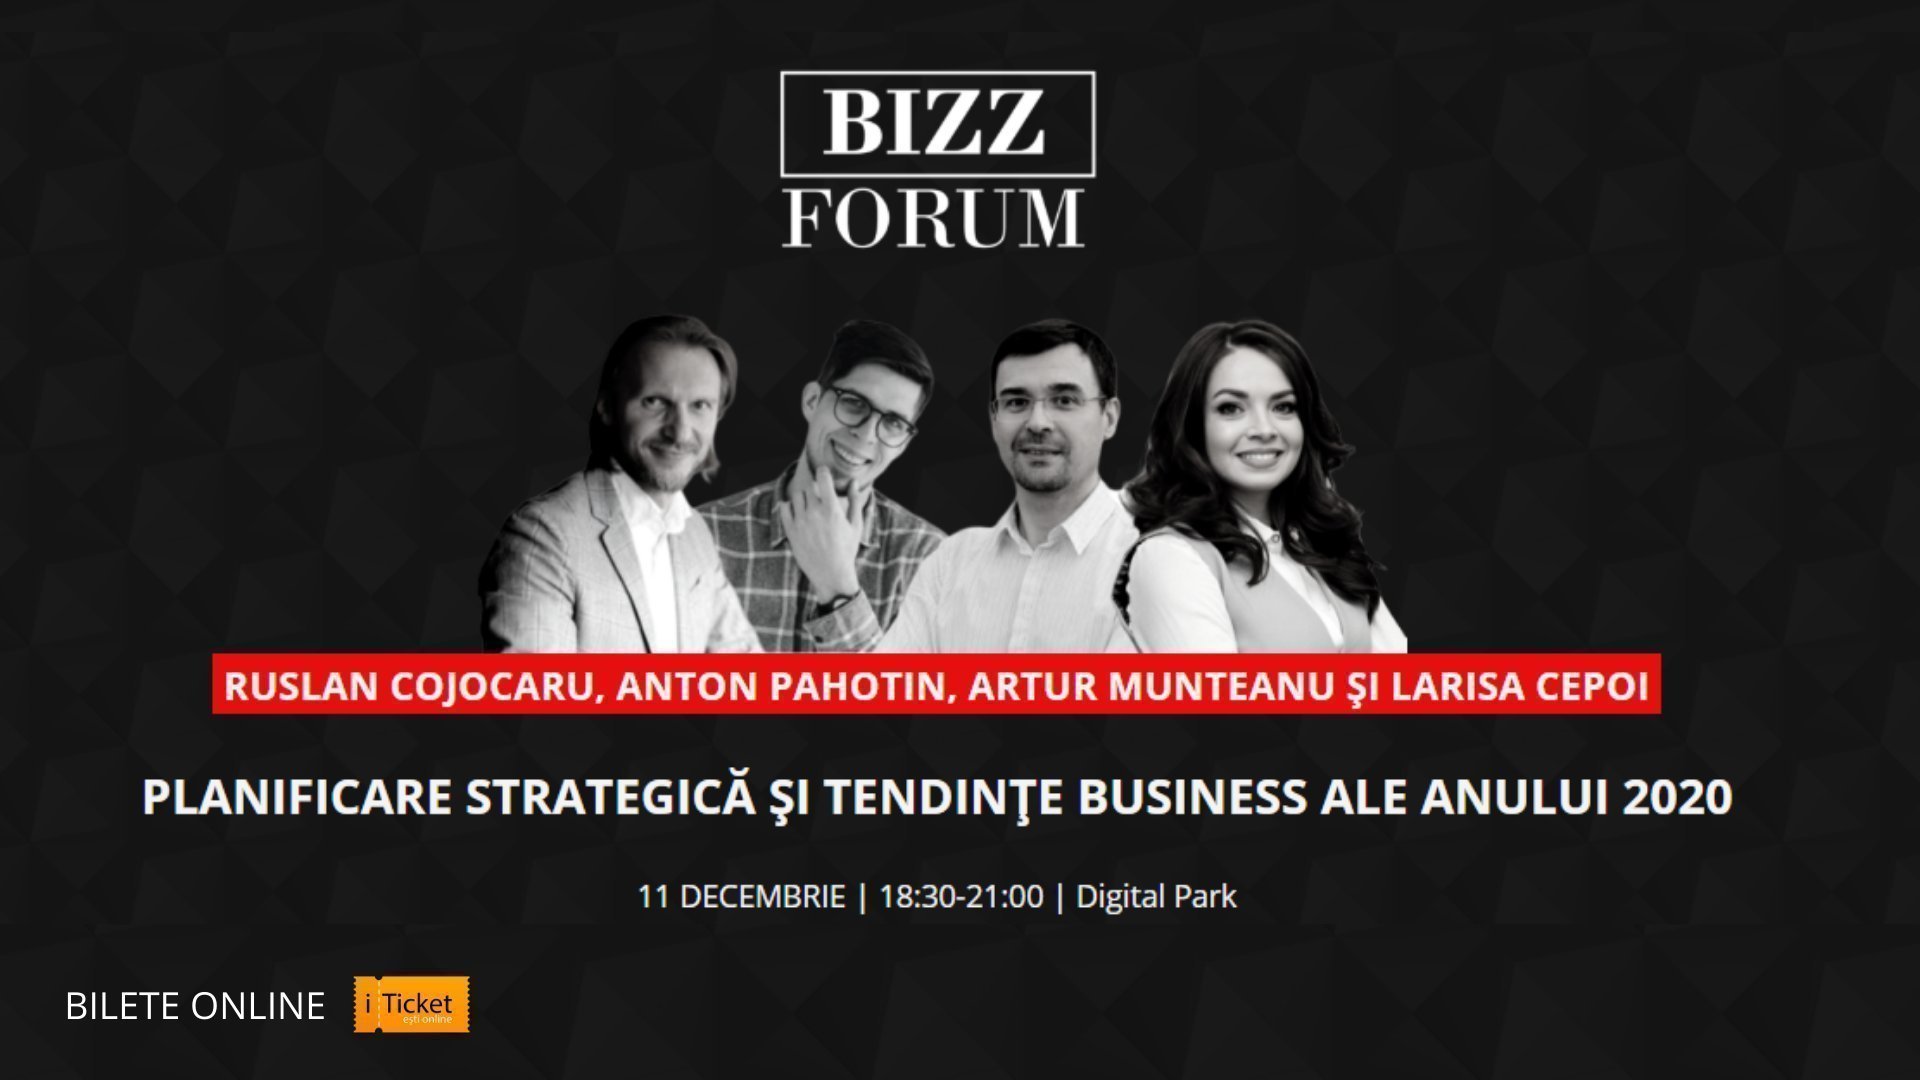 BIZZ FORUM - Planificare strategica si tendinte business ale anului 2020